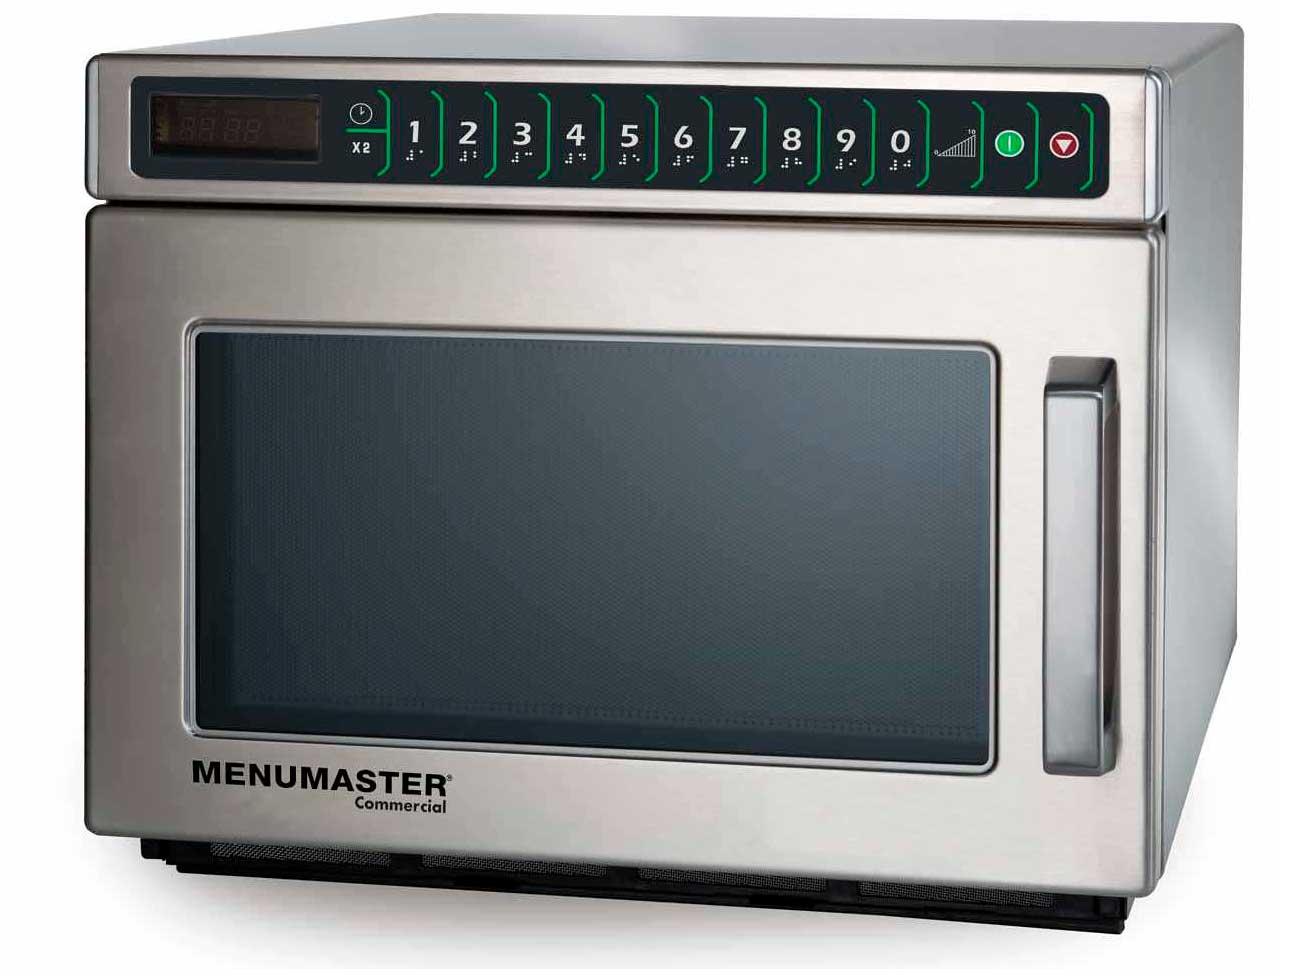 Commercial Microwave Oven 220-240V 50HZ MENUMASTER DEC14E2